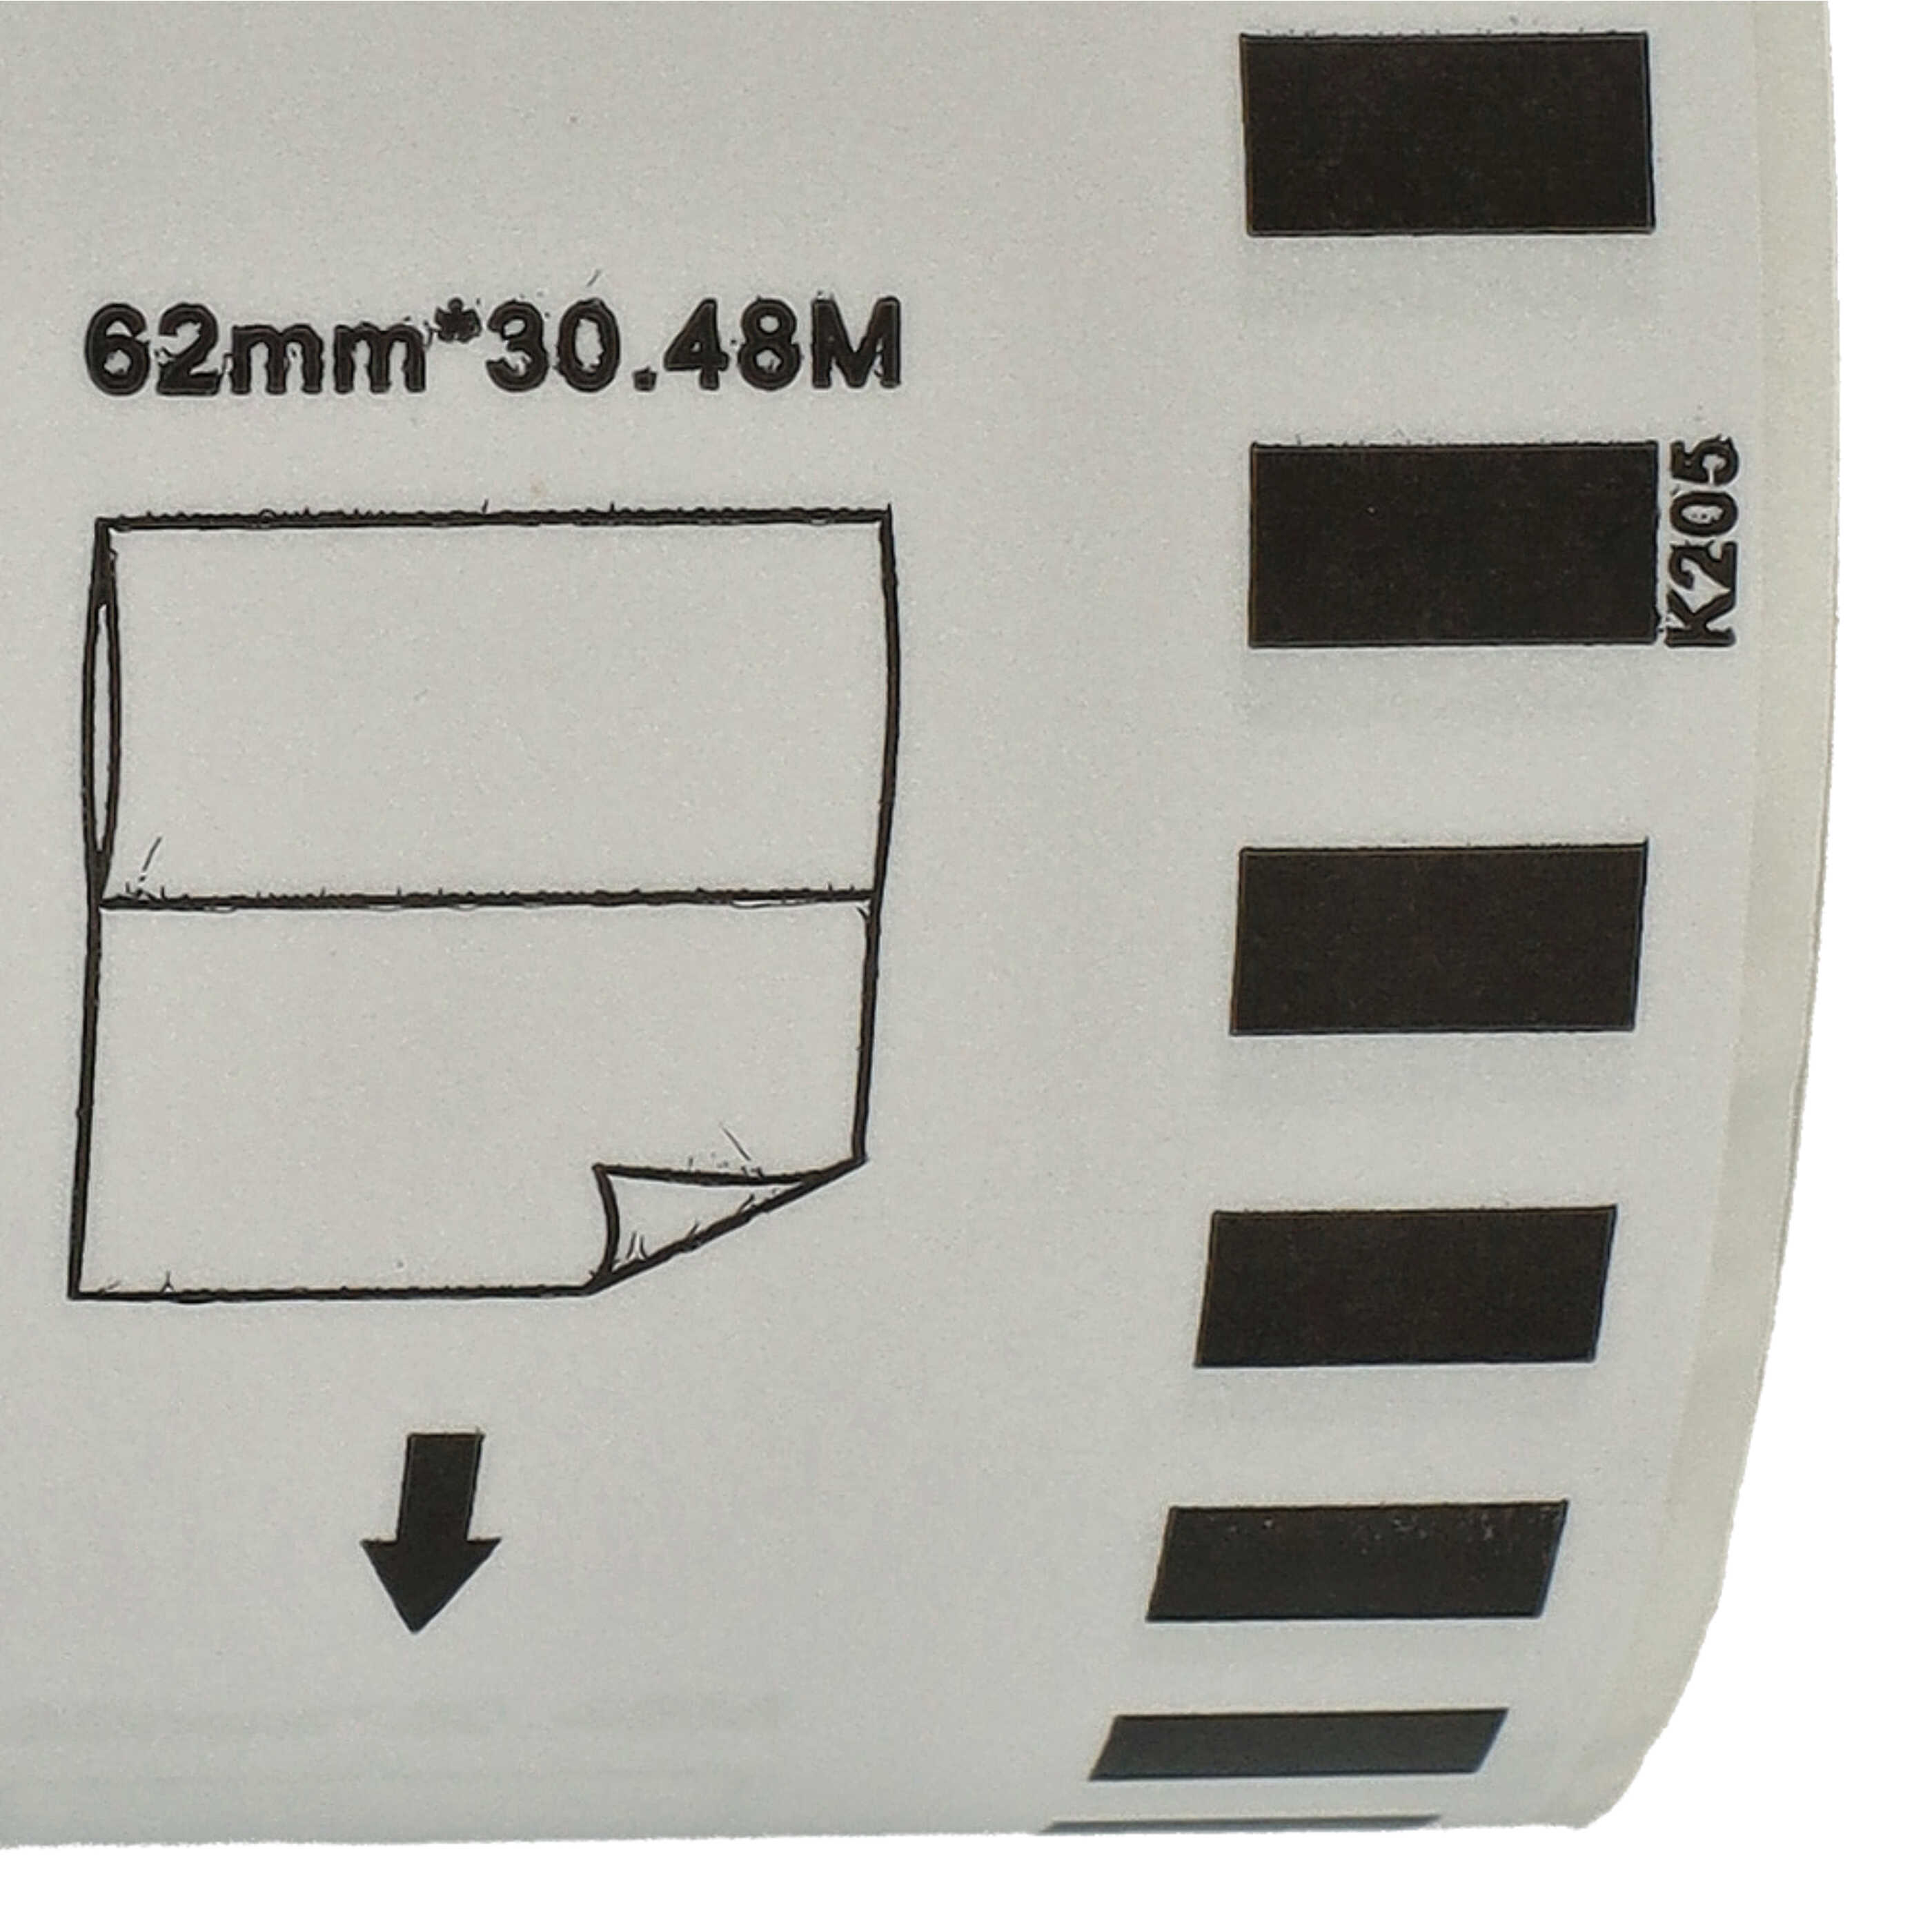 Rotolo etichette sostituisce Brother DK-22205 per etichettatrice - Premium 62mm x 30,48m